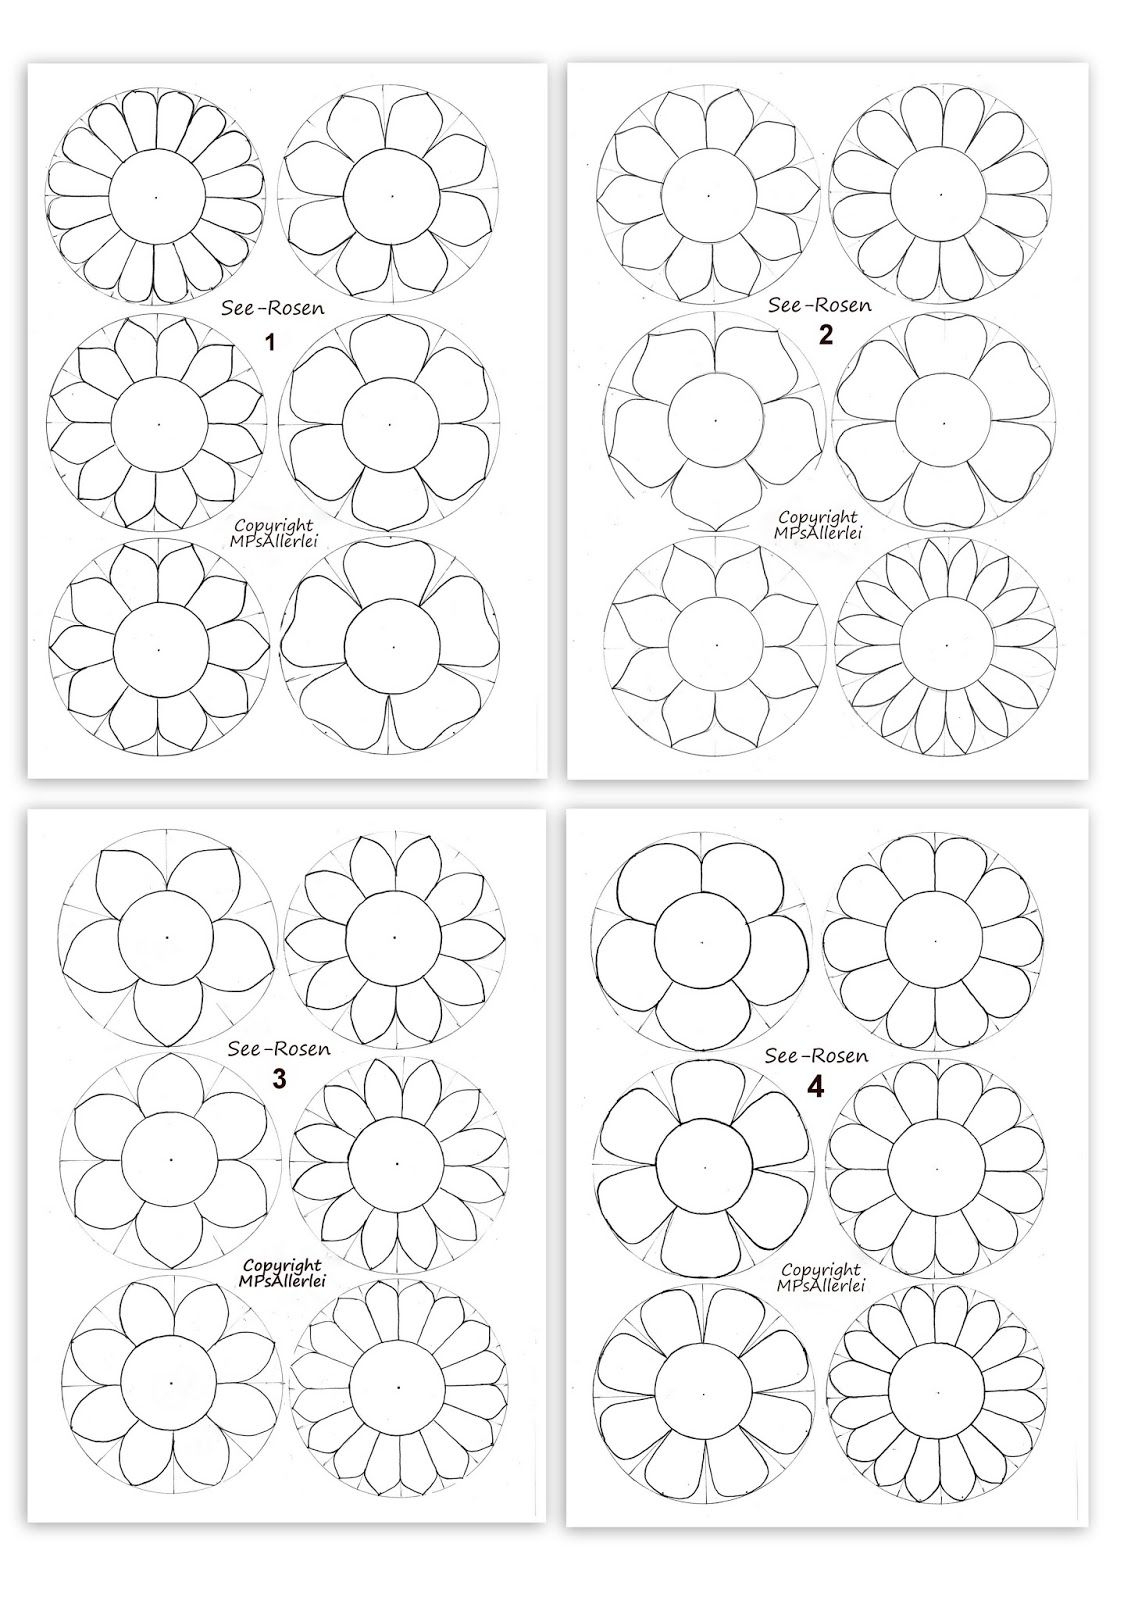 See-Rosen : Anleitung - Tipps - Ausdruckvorlagen bei Blumen Zum Ausschneiden